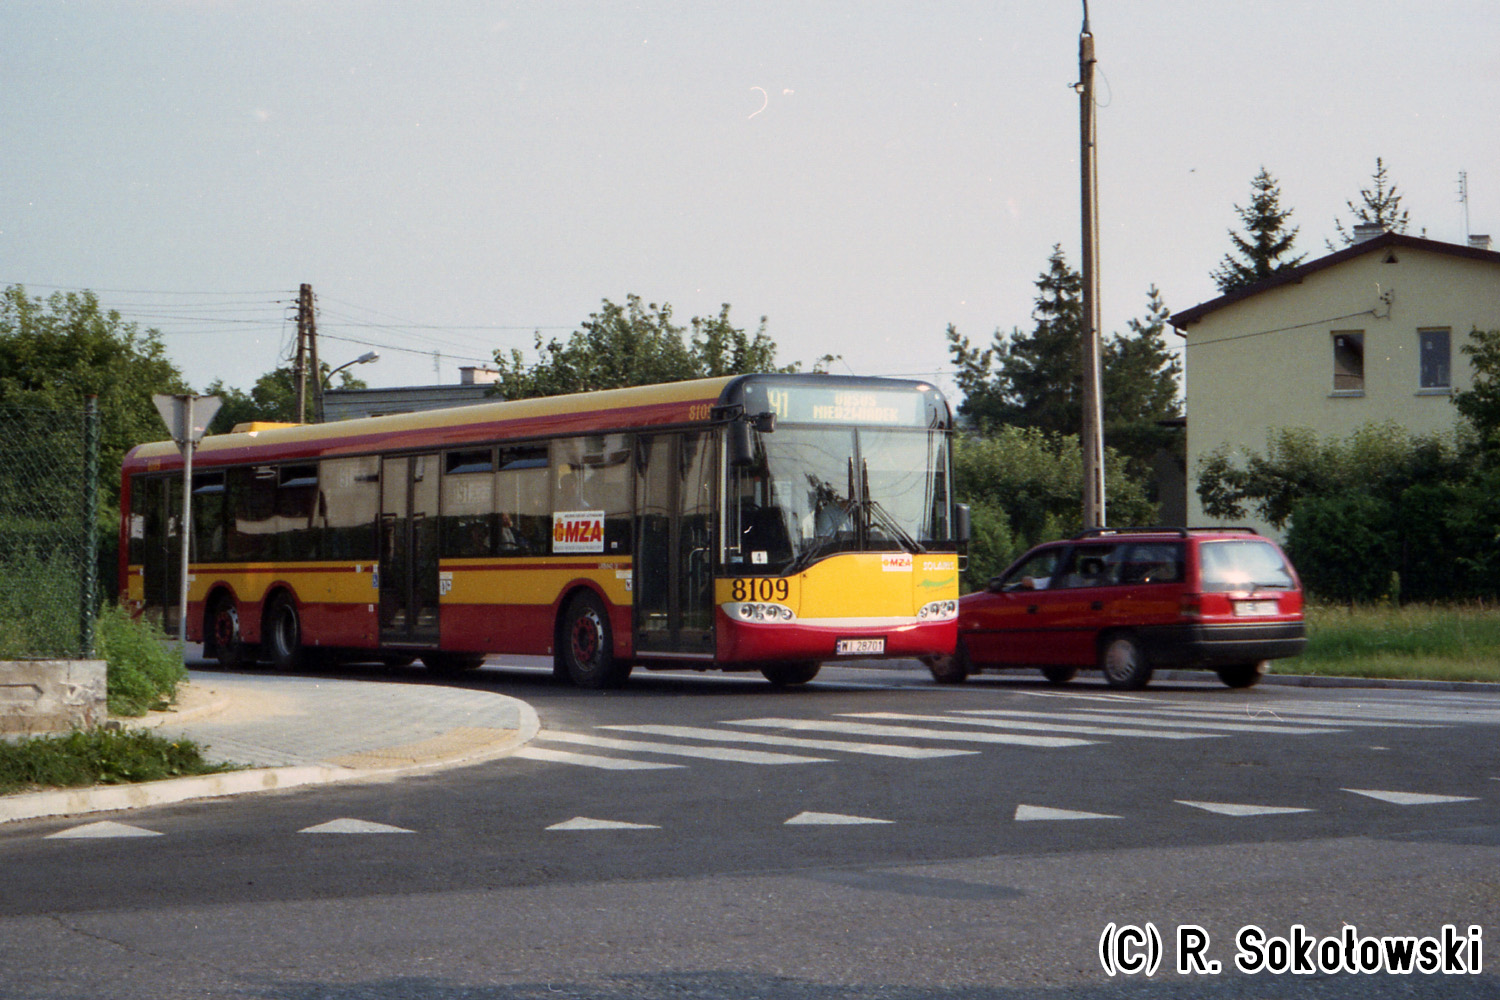 Solaris Urbino 15 #8109